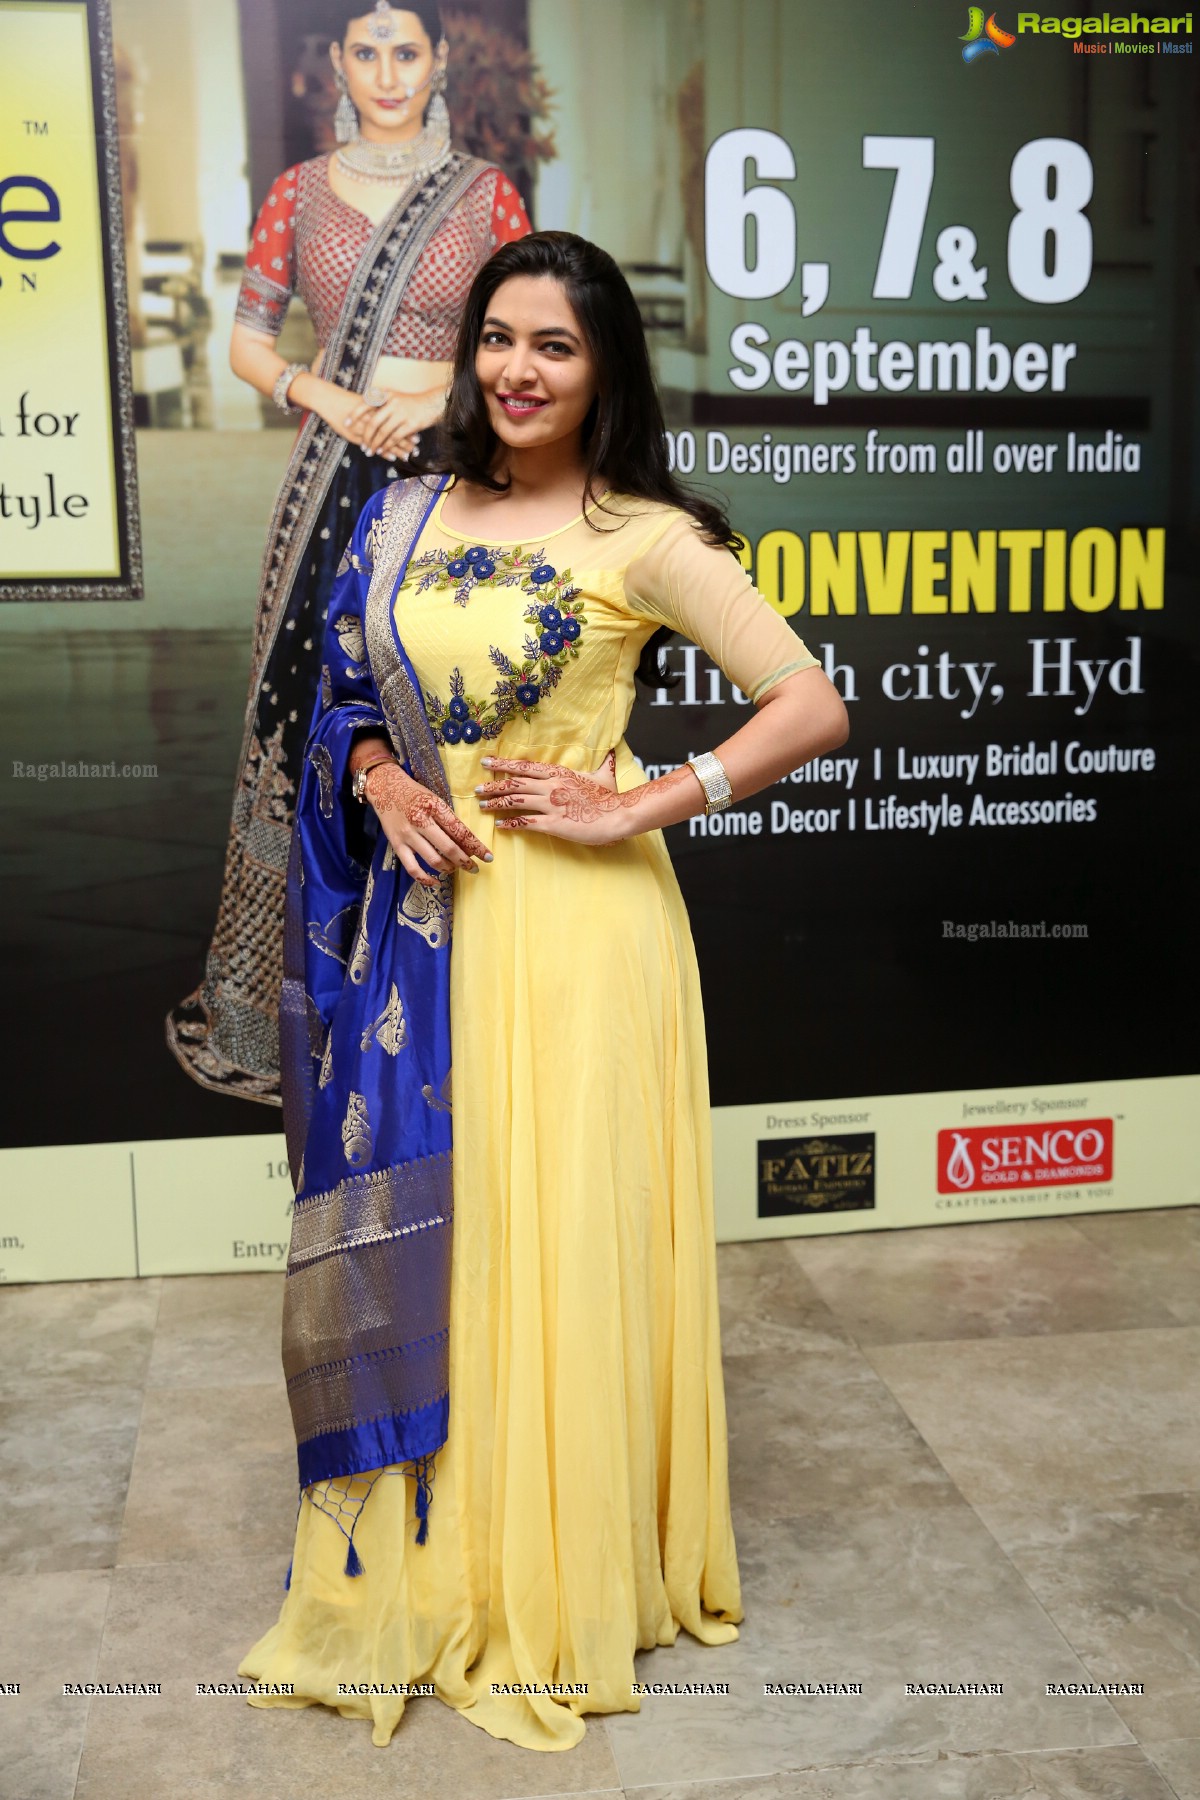 D'sire Designer Exhibition Curtain Raiser at N Convention, Hyderabad